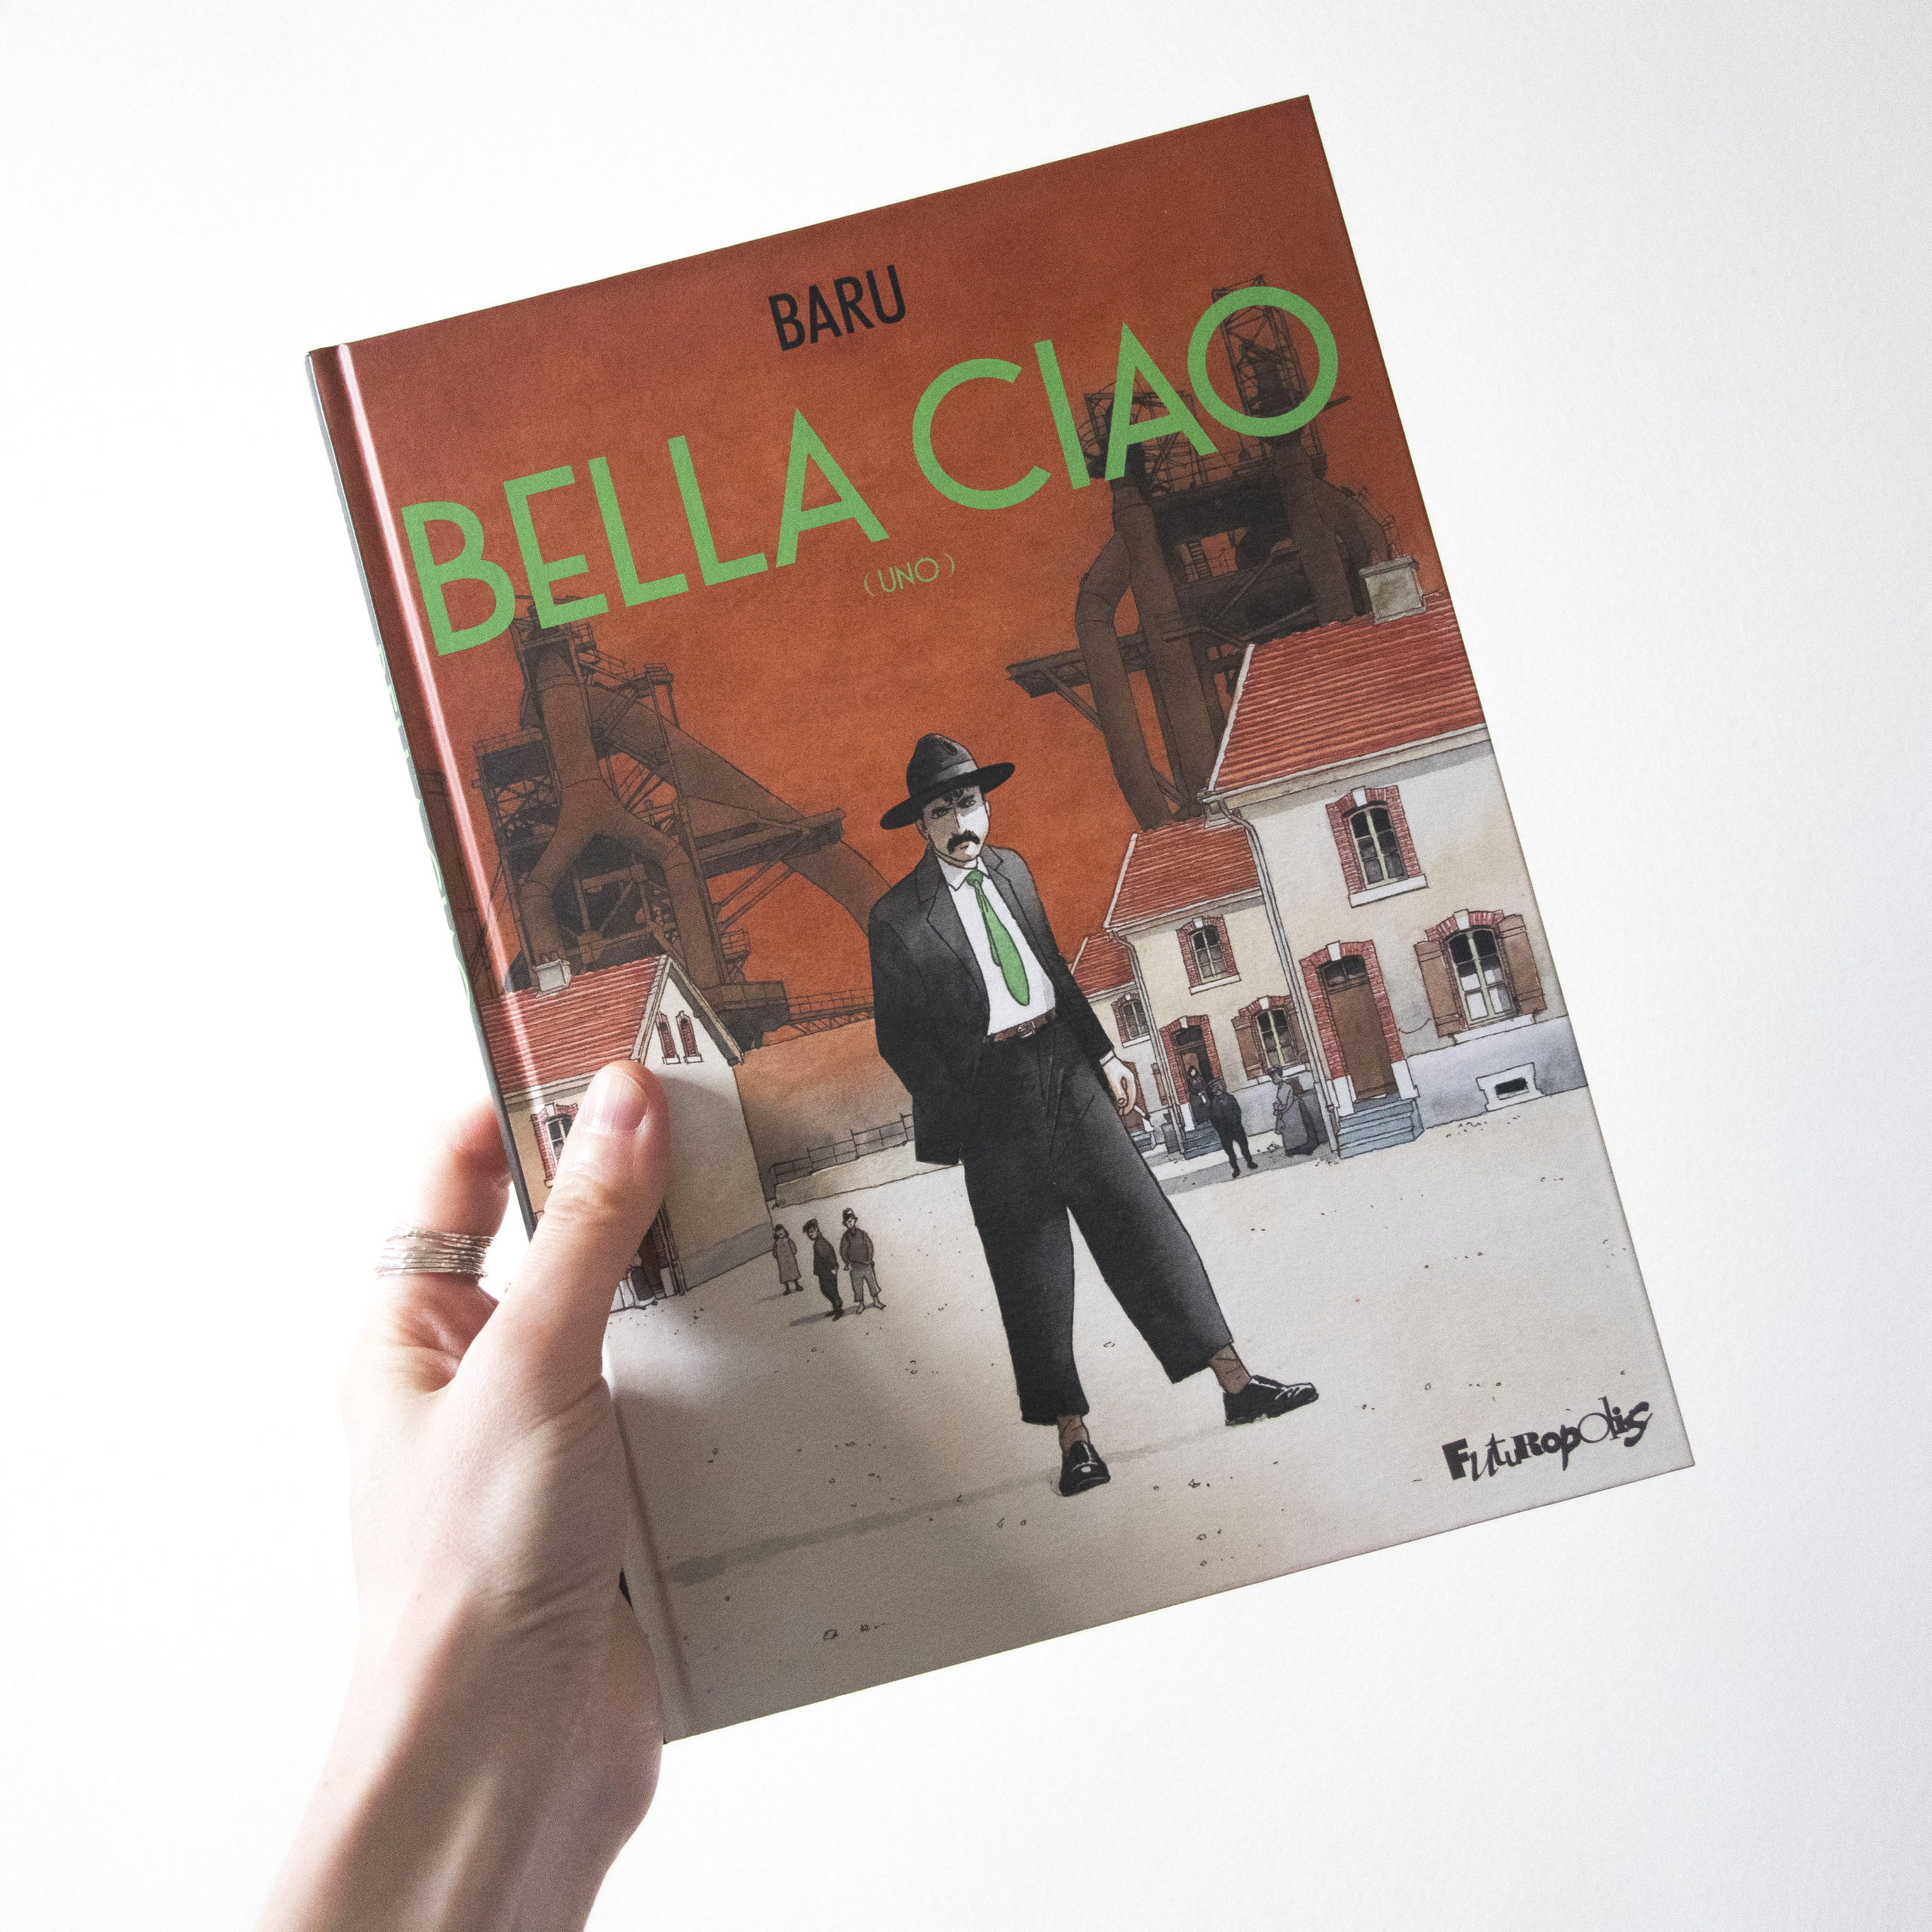 Bella Ciao, Baru, Editions Gallimard, collection Futuropolis